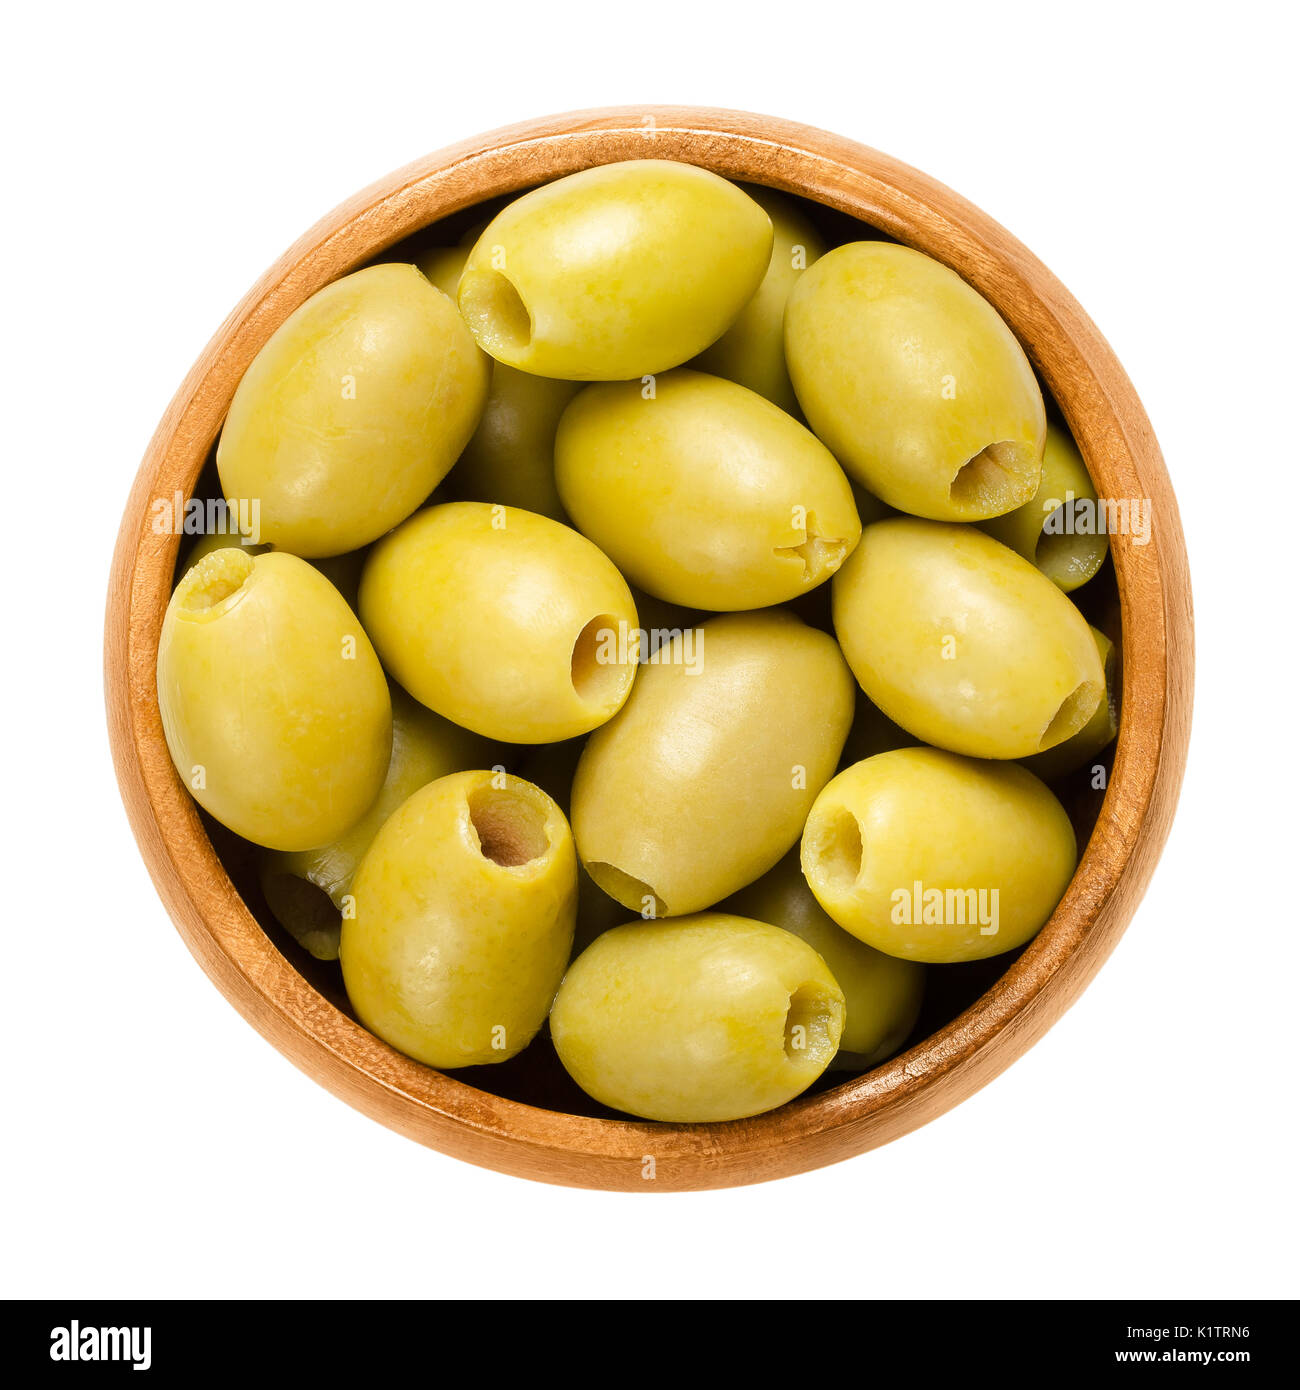 Olives vertes dénoyautées et mariné dans bol en bois. Fruits de l'olivier, Olea europaea. Les olives de table vertes avec du jaune au vert. Banque D'Images